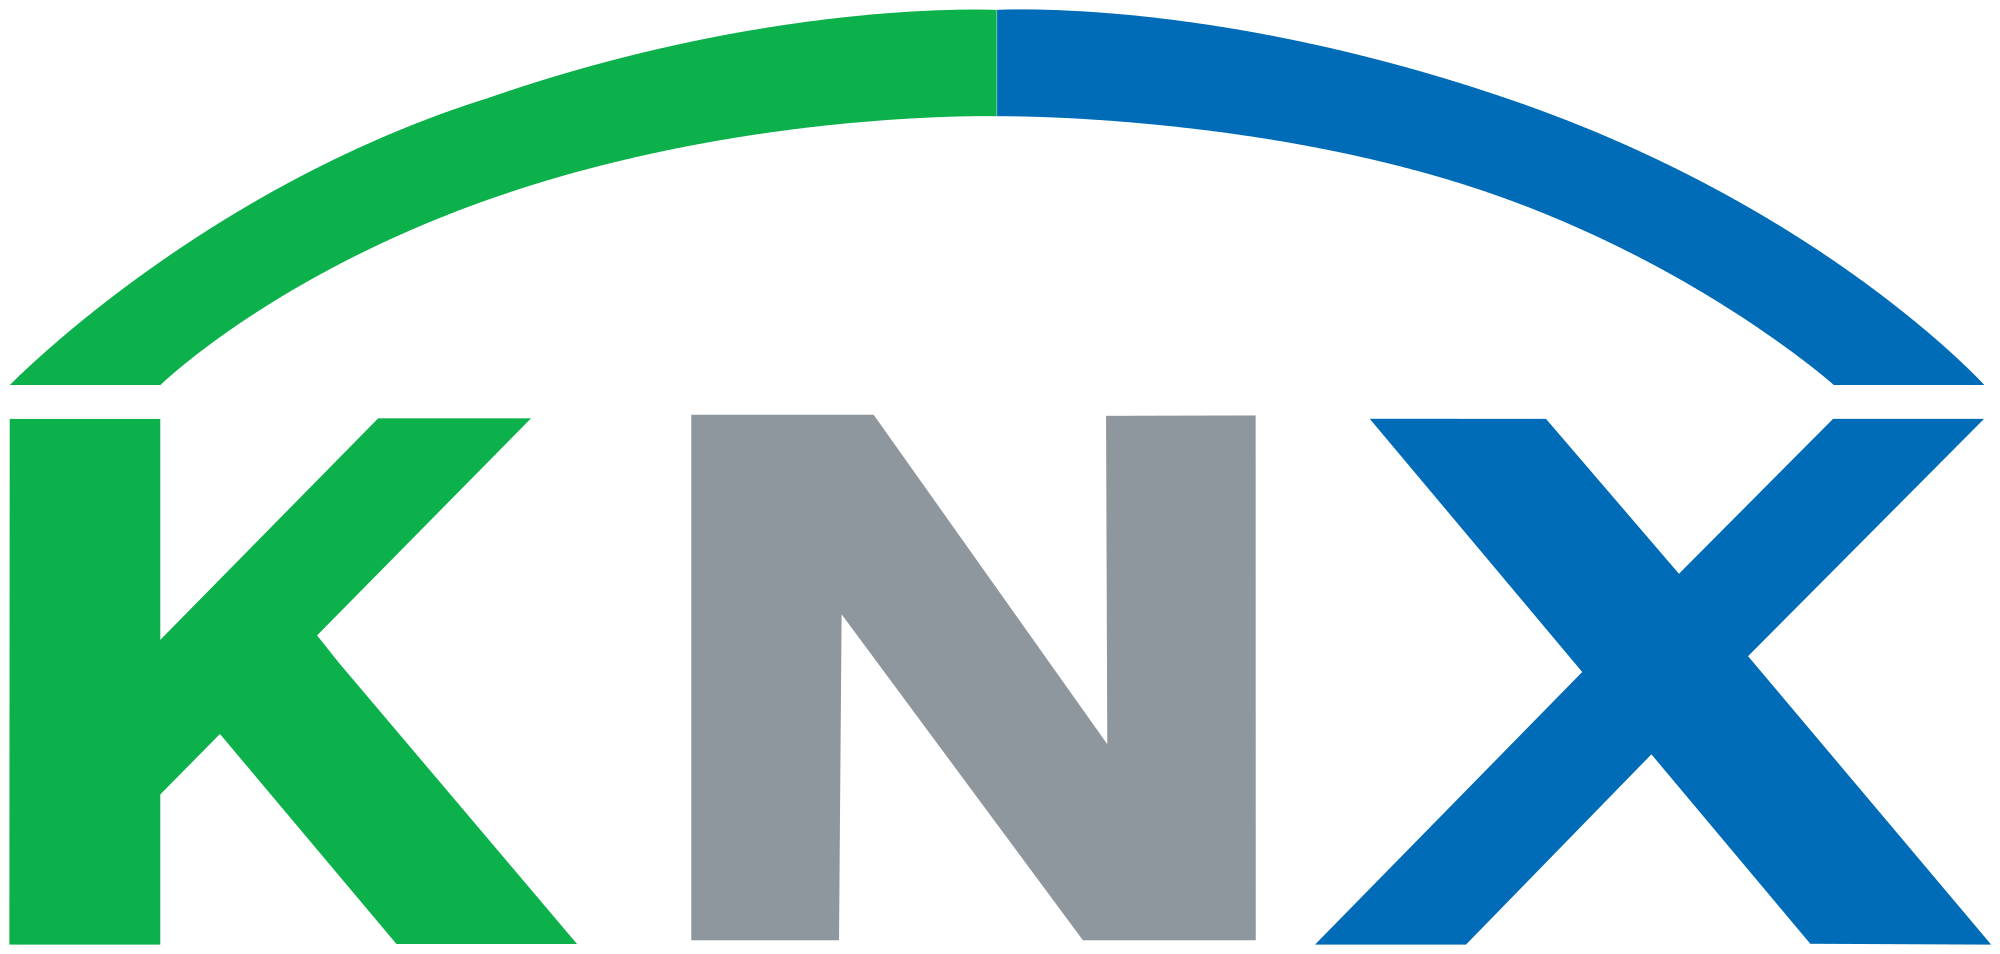 2000px-KNX-logo.svg